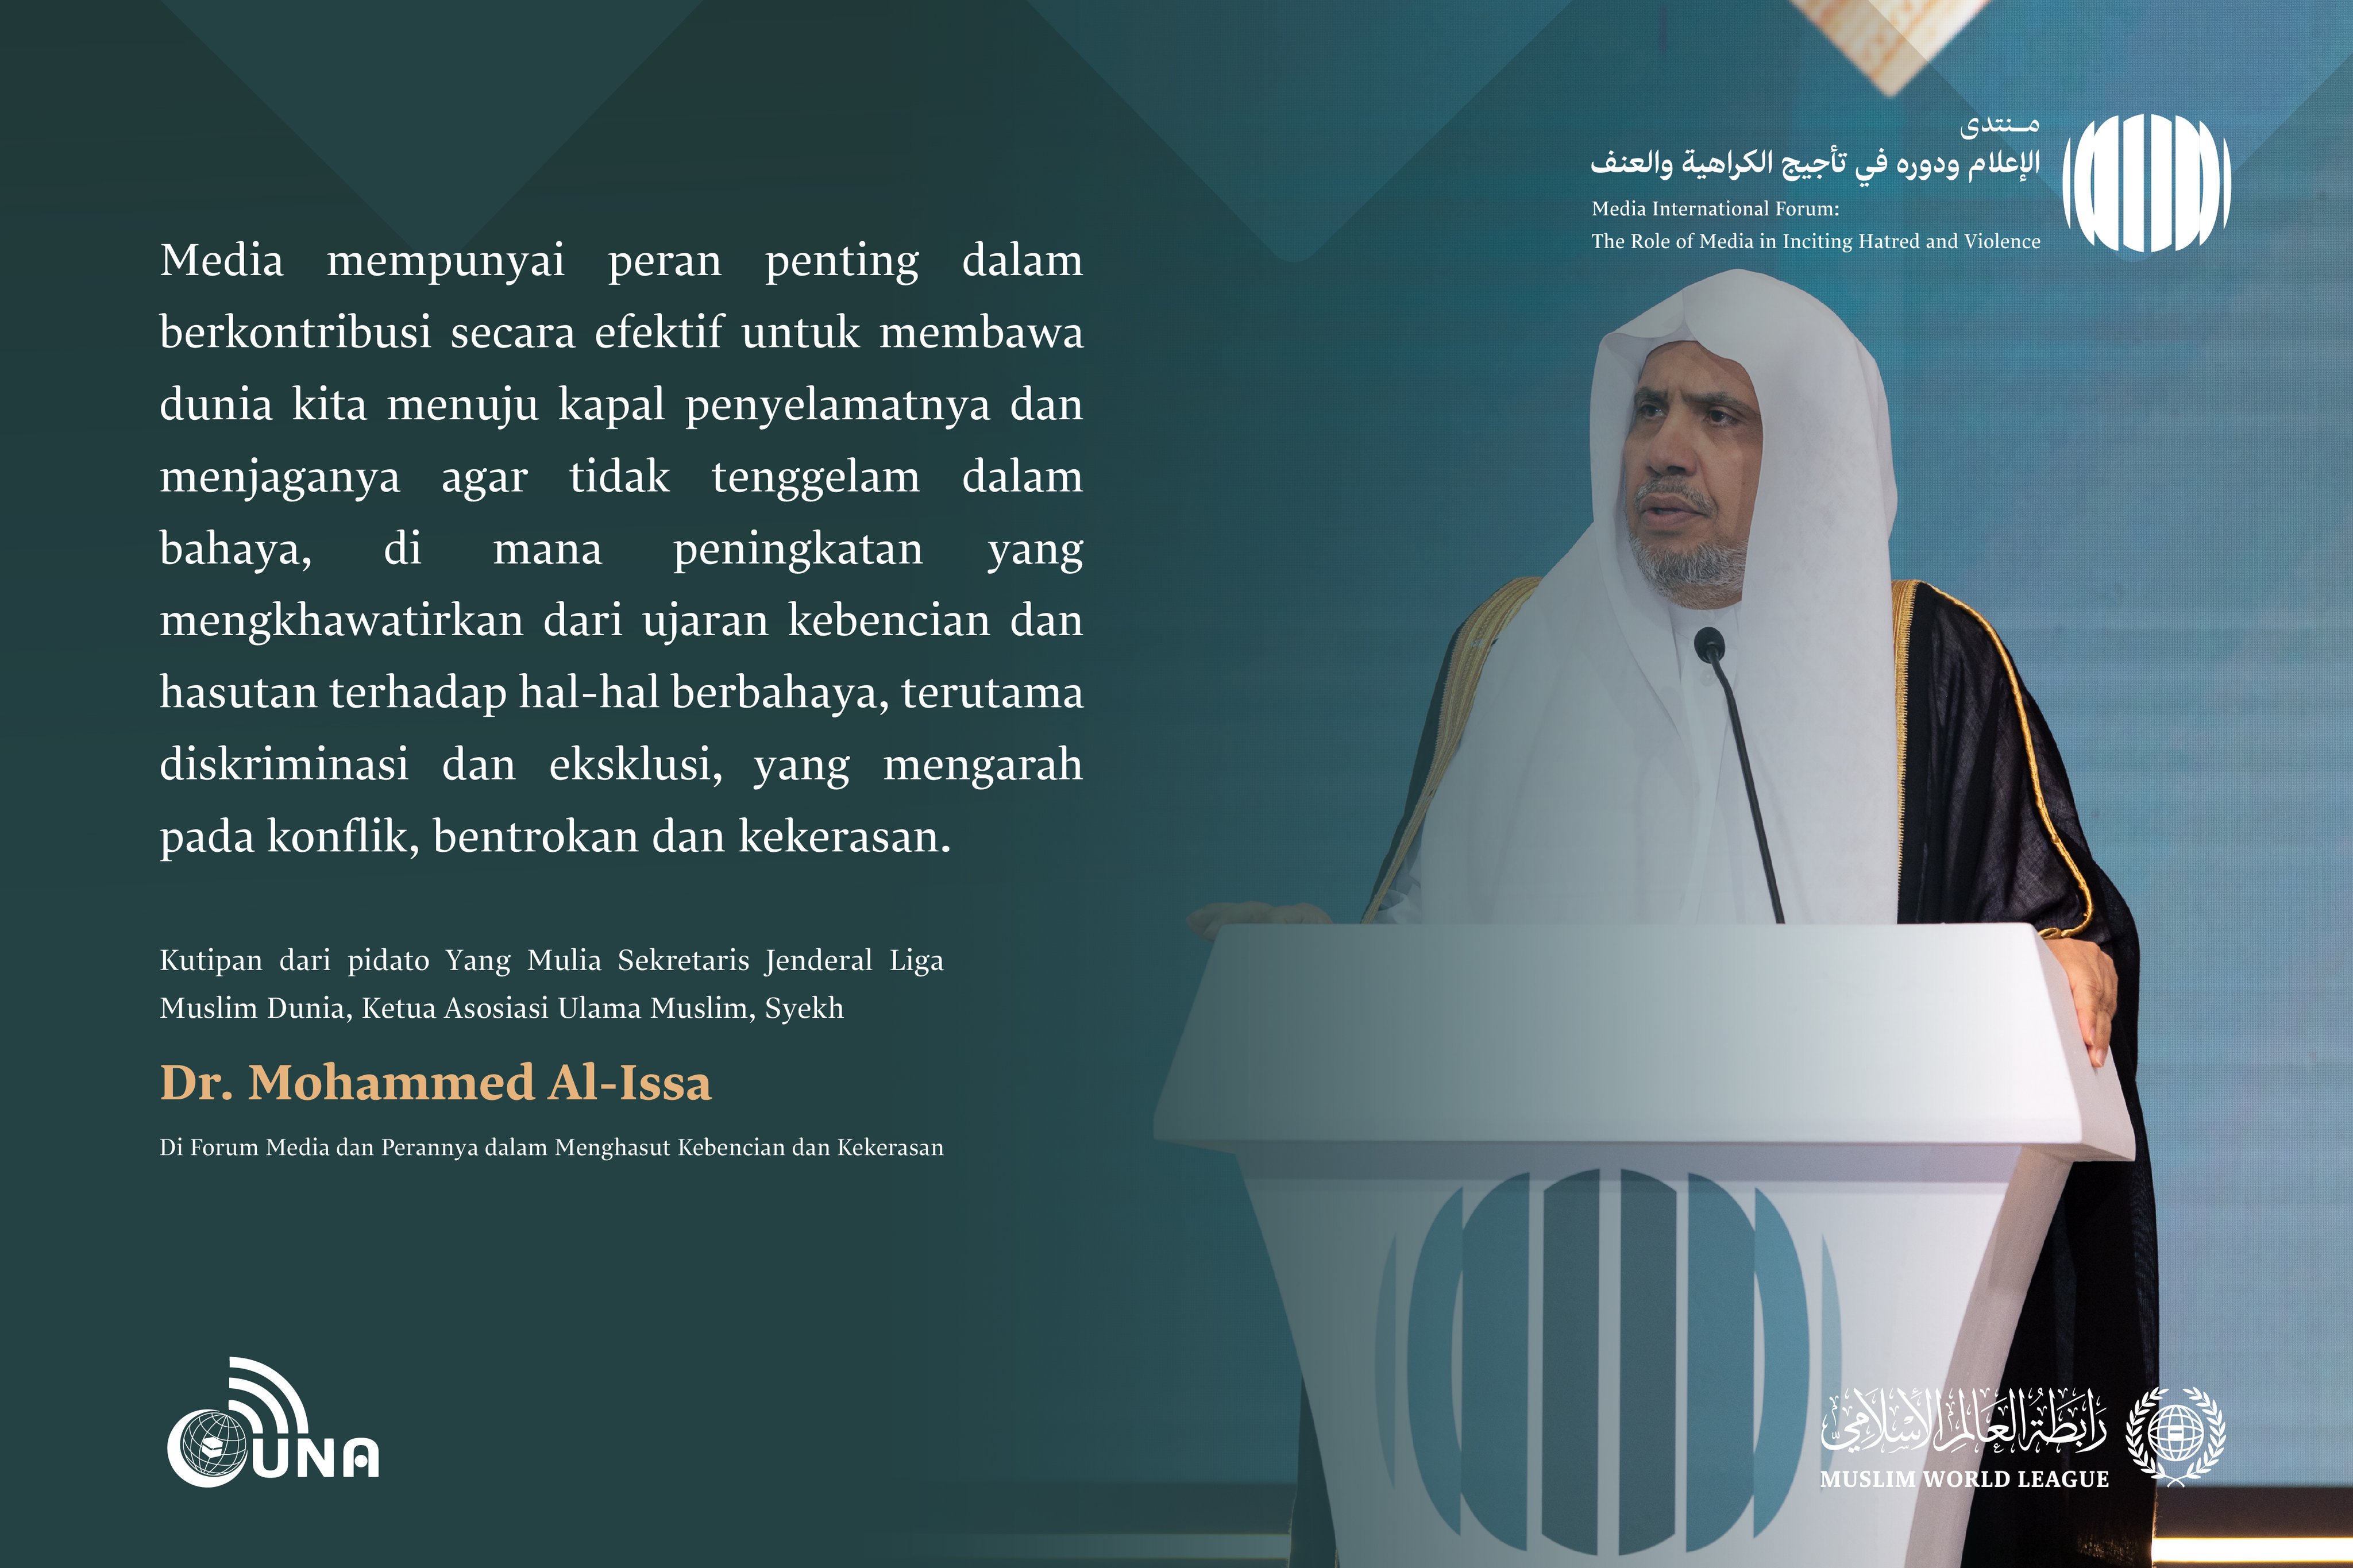 Kutipan dari pidato Yang Mulia Sekretaris Jenderal LMD, Ketua Asosiasi Ulama Muslim, Syekh Dr.Mohammed Al-Issa , di Forum Internasional: “Media dan Perannya dalam Menghasut Kebencian dan Kekerasan: Bahaya Misinformasi dan Bias.” Media Tanpa Misinformasi